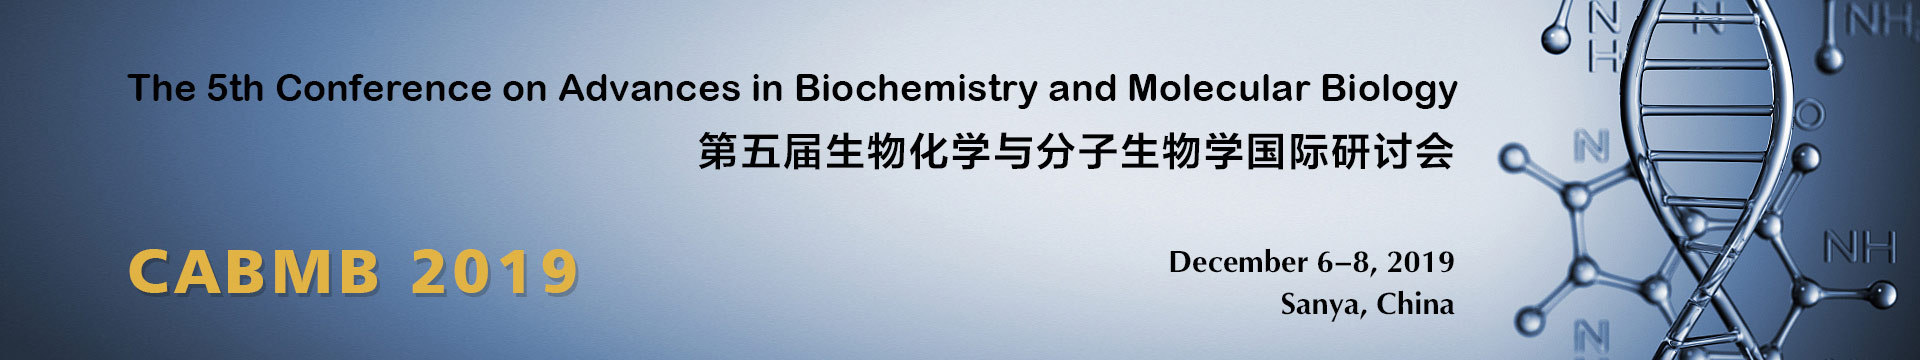 第五届生物化学与分子生物学国际研讨会(CABMB 2019)